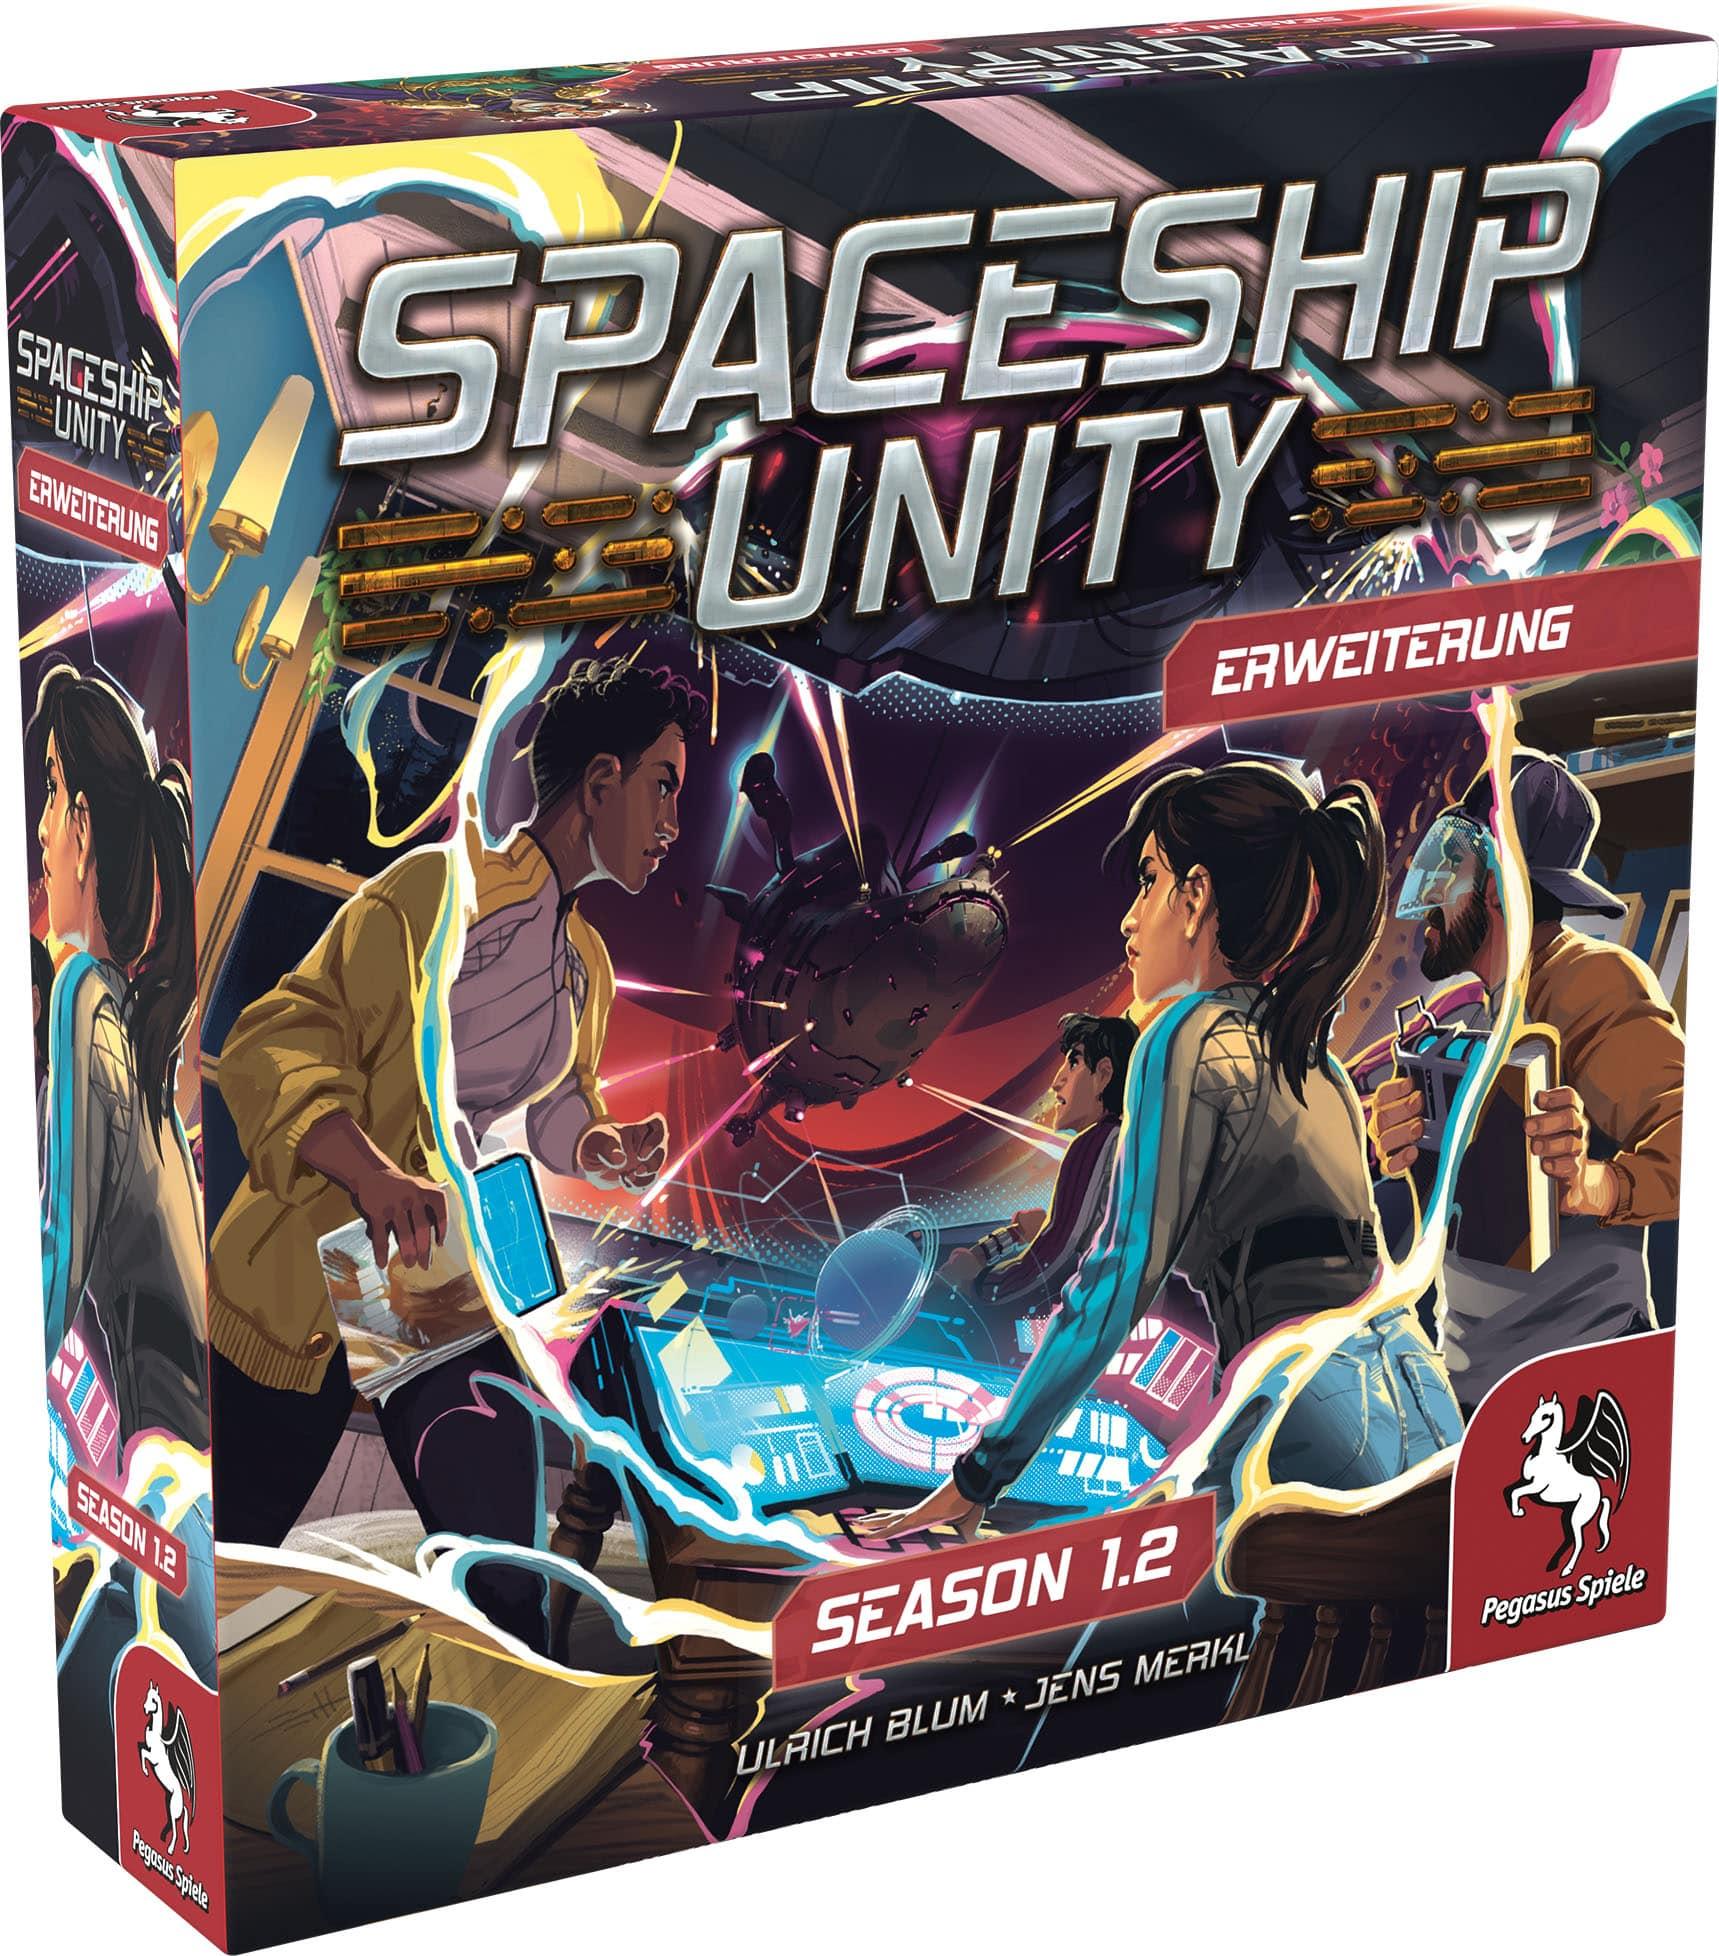 Spaceship Unity - Erweiterung: Season 1.2